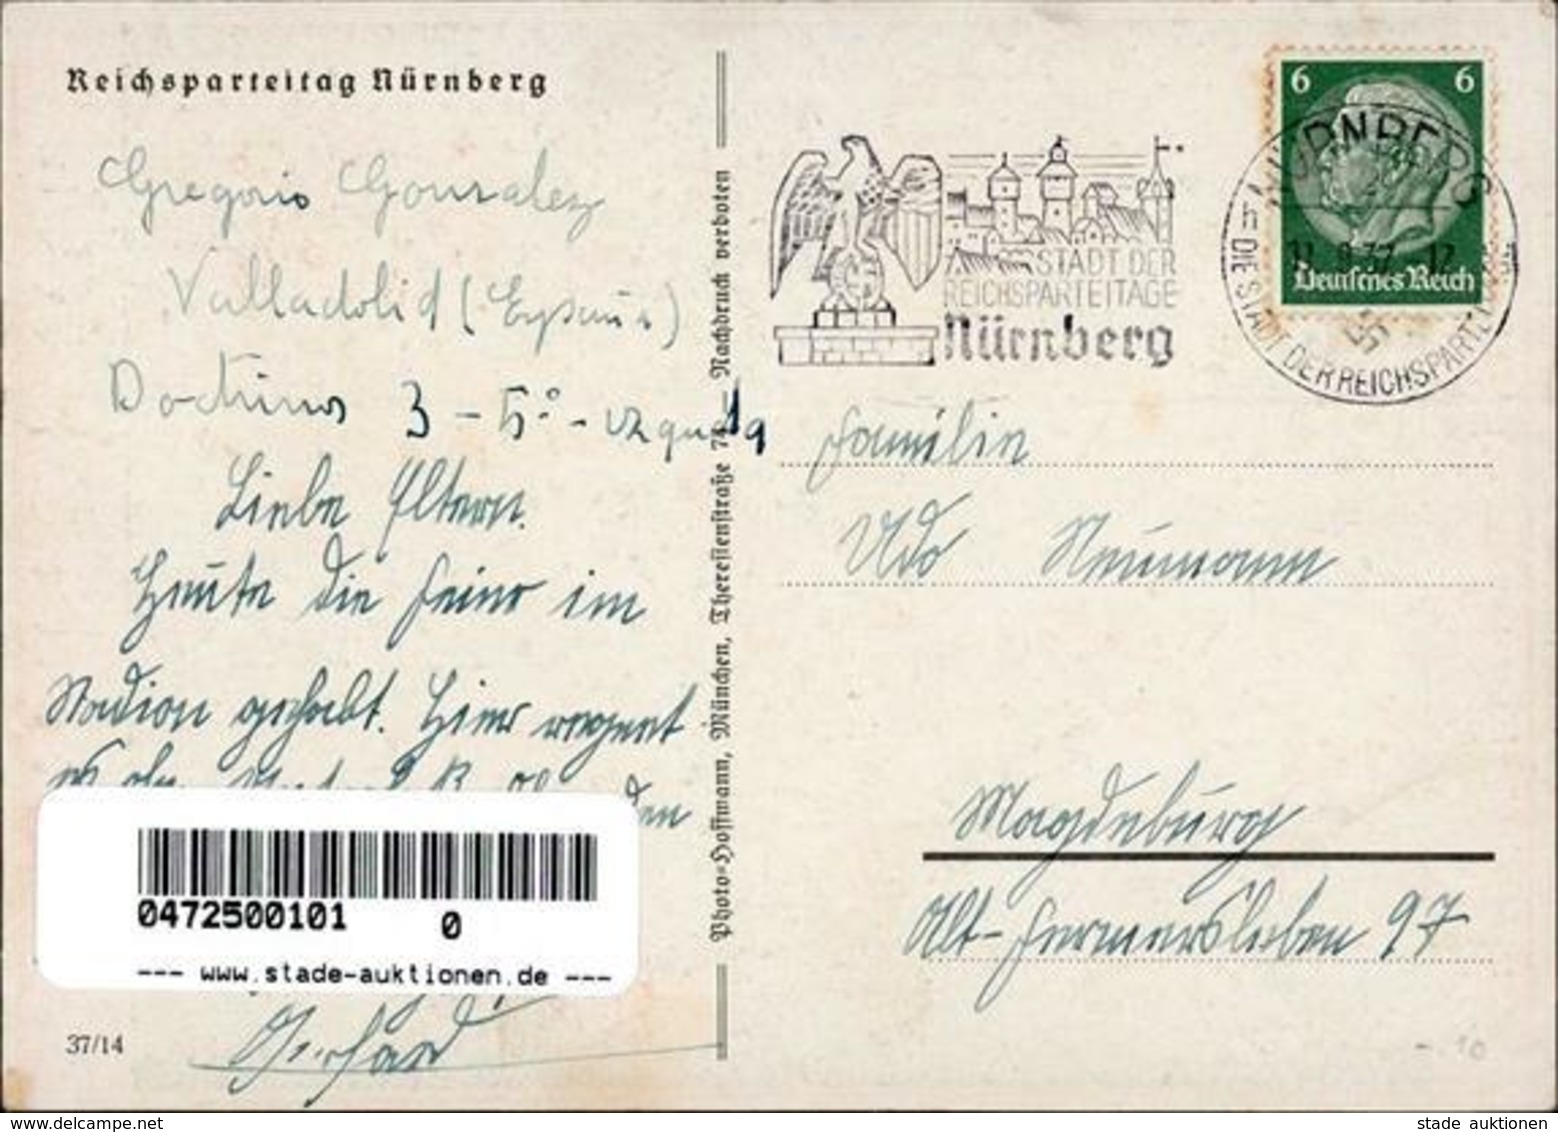 Reichsparteitag Nürnberg (8500) WK II 1937  I-II - Guerra 1939-45